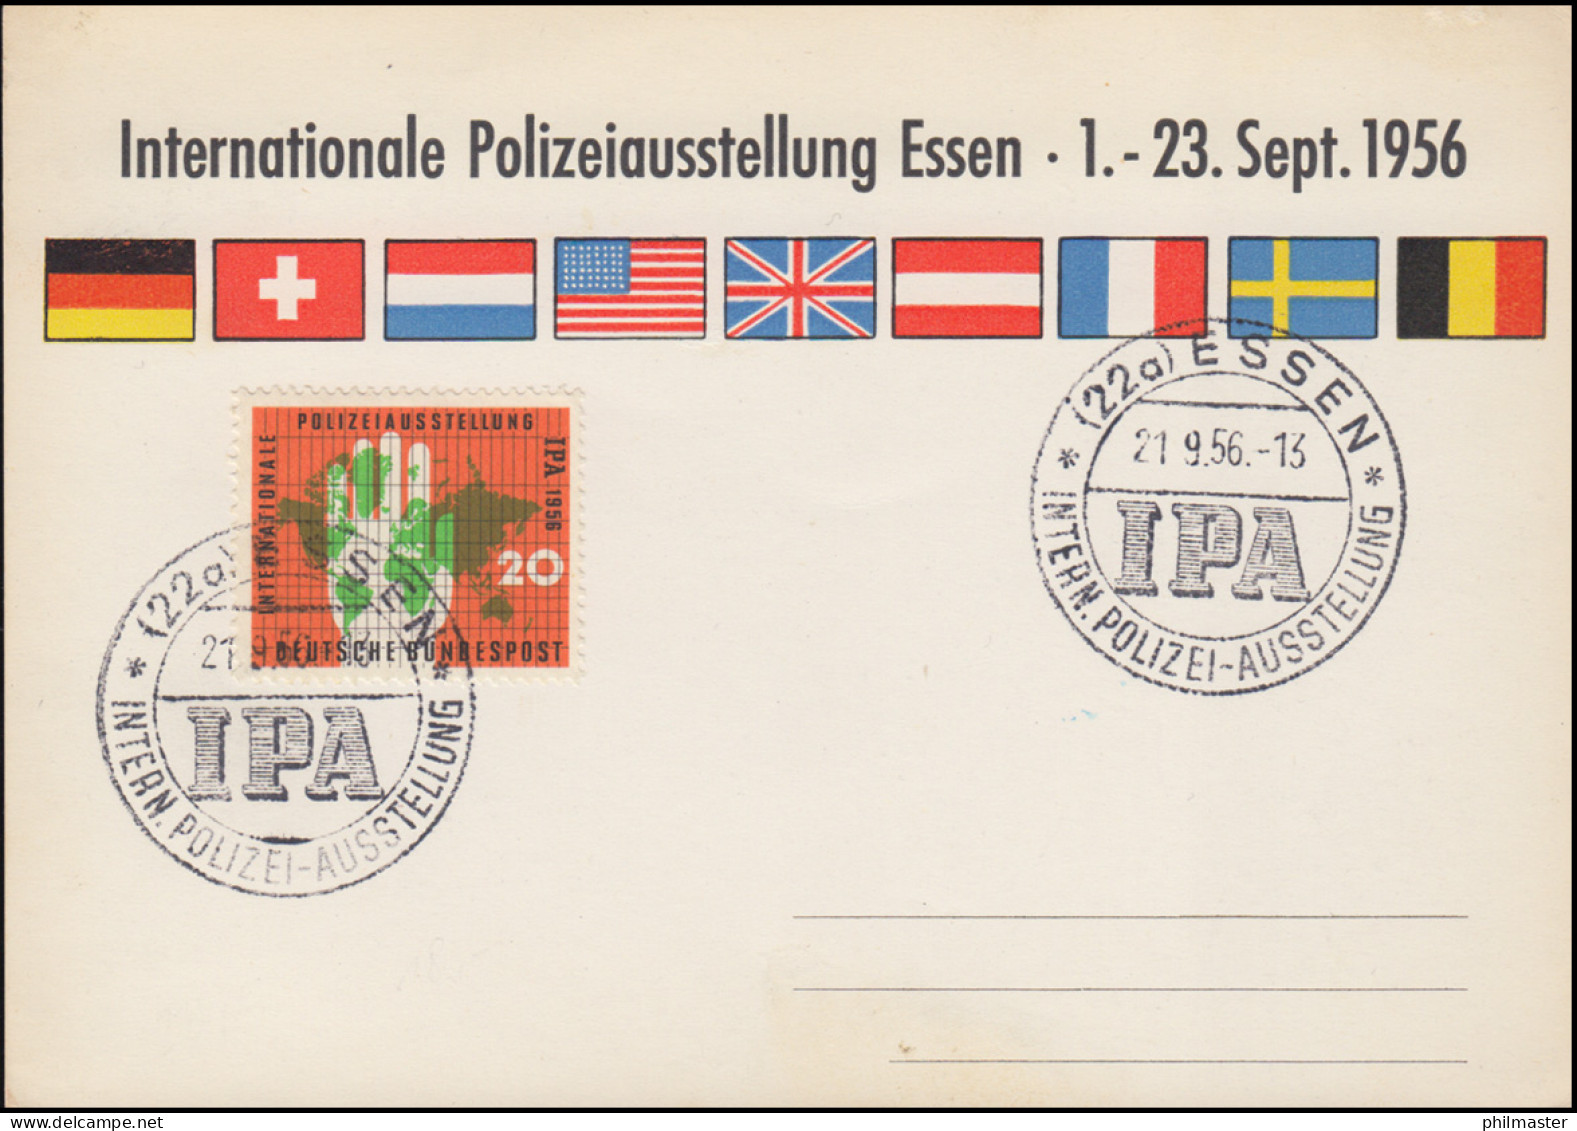 Sonder-Karte 240 Internationale Polizeiausstellung Essen 1956, SSt IPA 21.9.56 - Politie En Rijkswacht